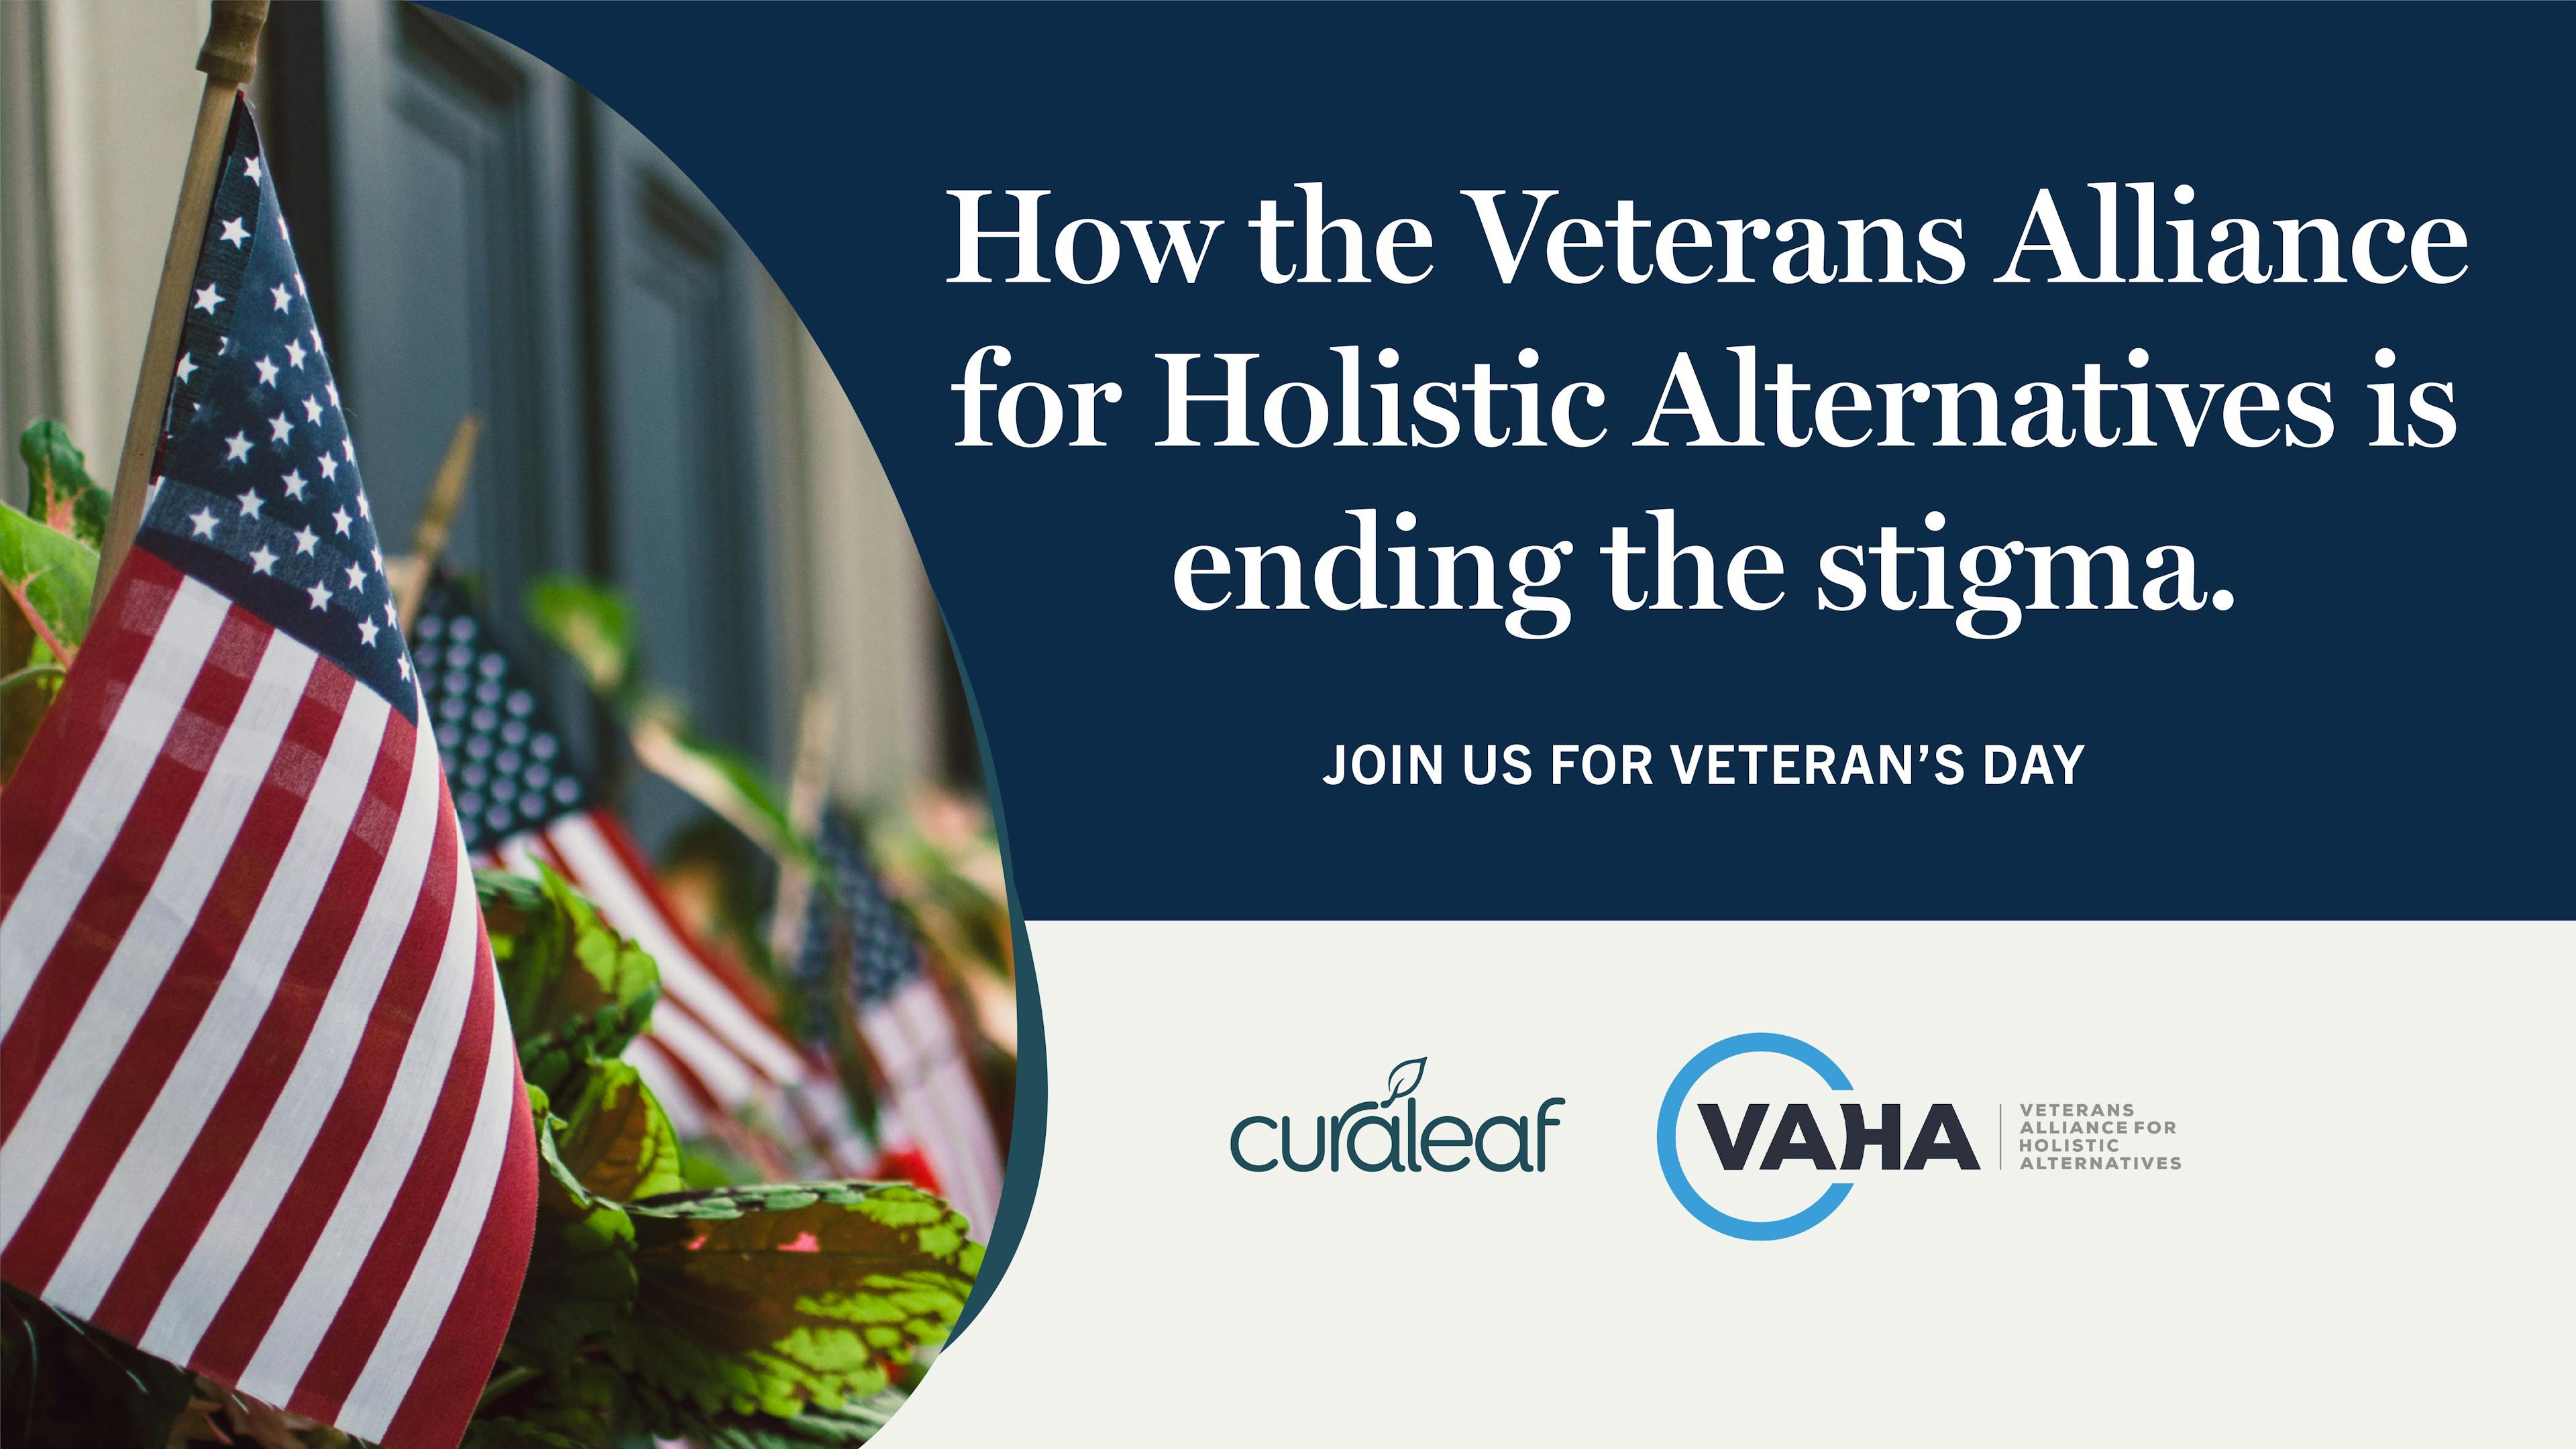 Veterans Alliance for Holistic Alternatives